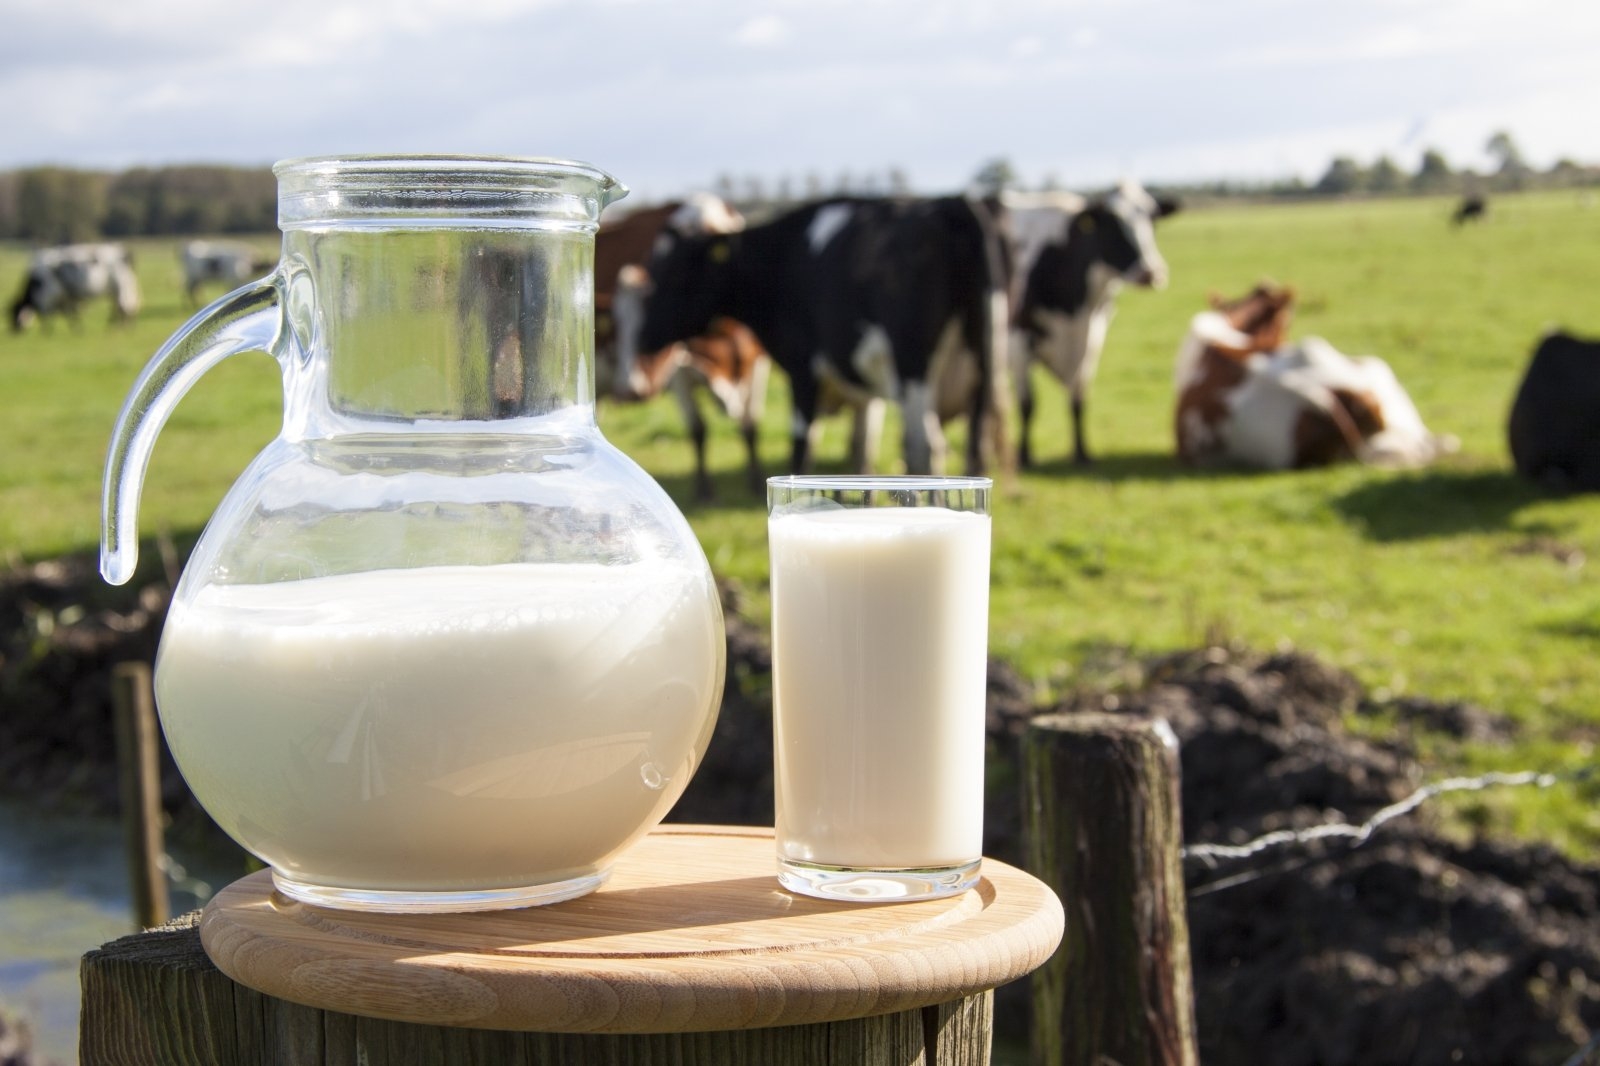 Pieno ūkiams – laikinas atokvėpis